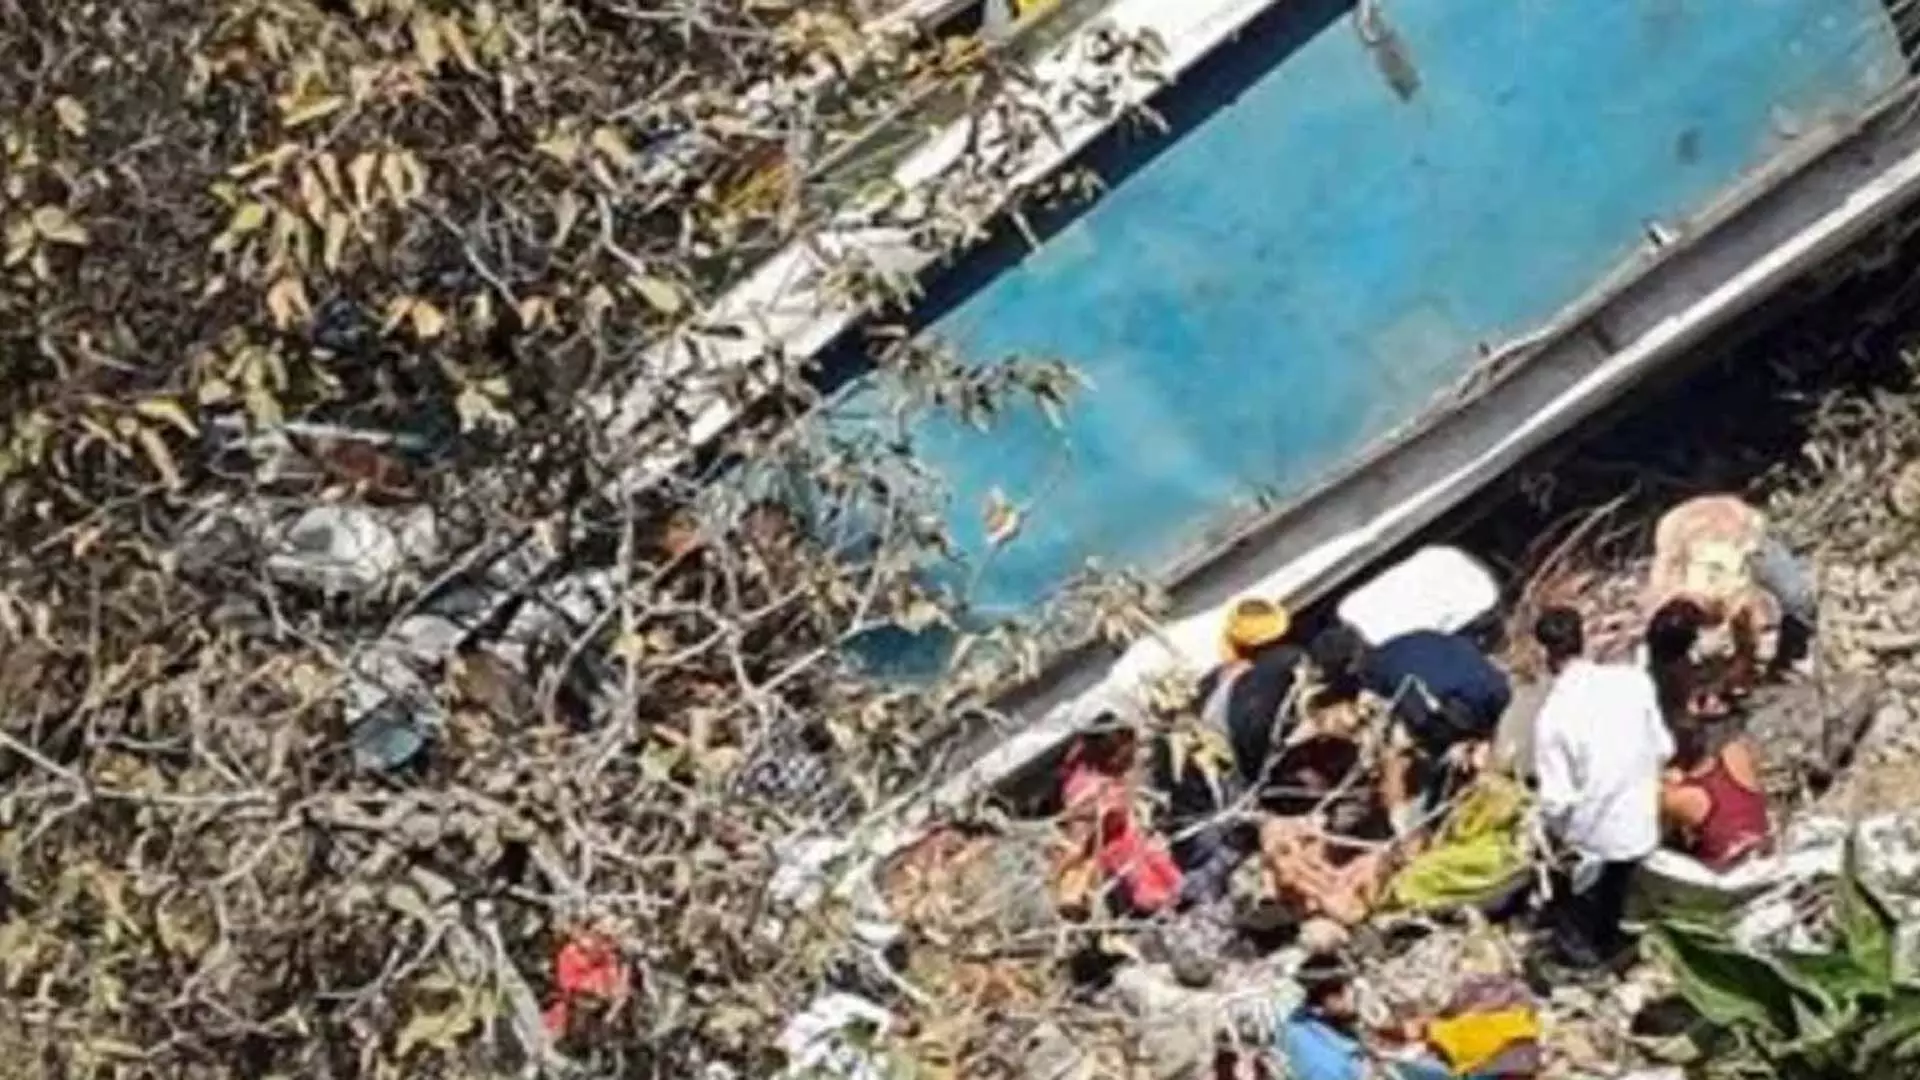 अखनूर में 91 यात्रियों को ले जा रही बस खाई में गिरी, 22 की मौत